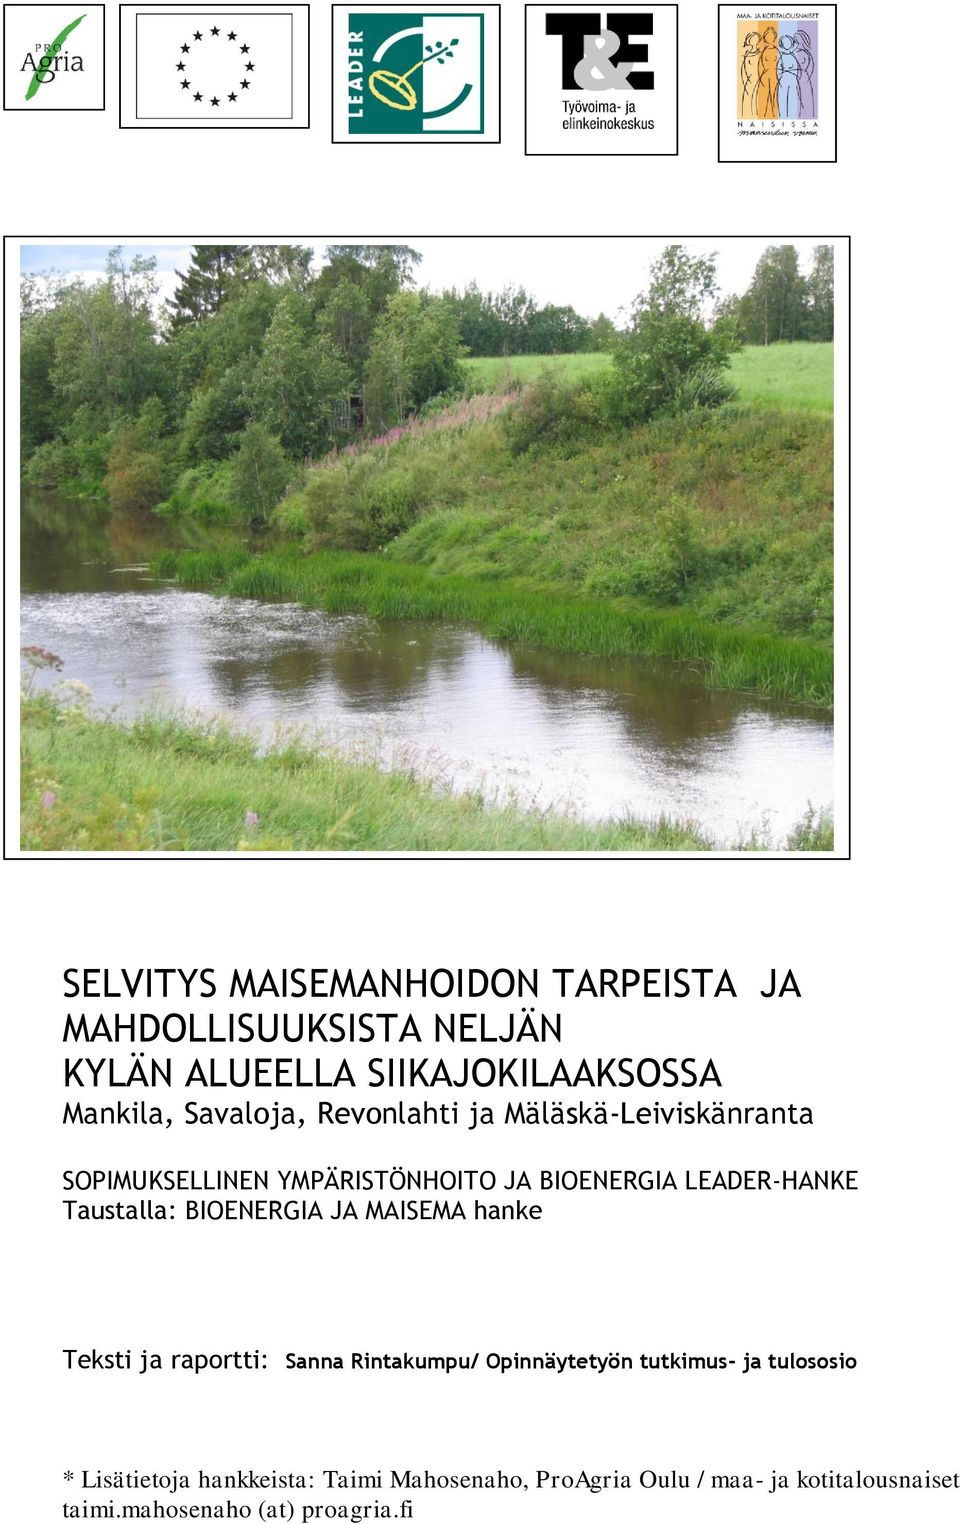 Taustalla: BIOENERGIA JA MAISEMA hanke Teksti ja raportti: Sanna Rintakumpu/ Opinnäytetyön tutkimus- ja